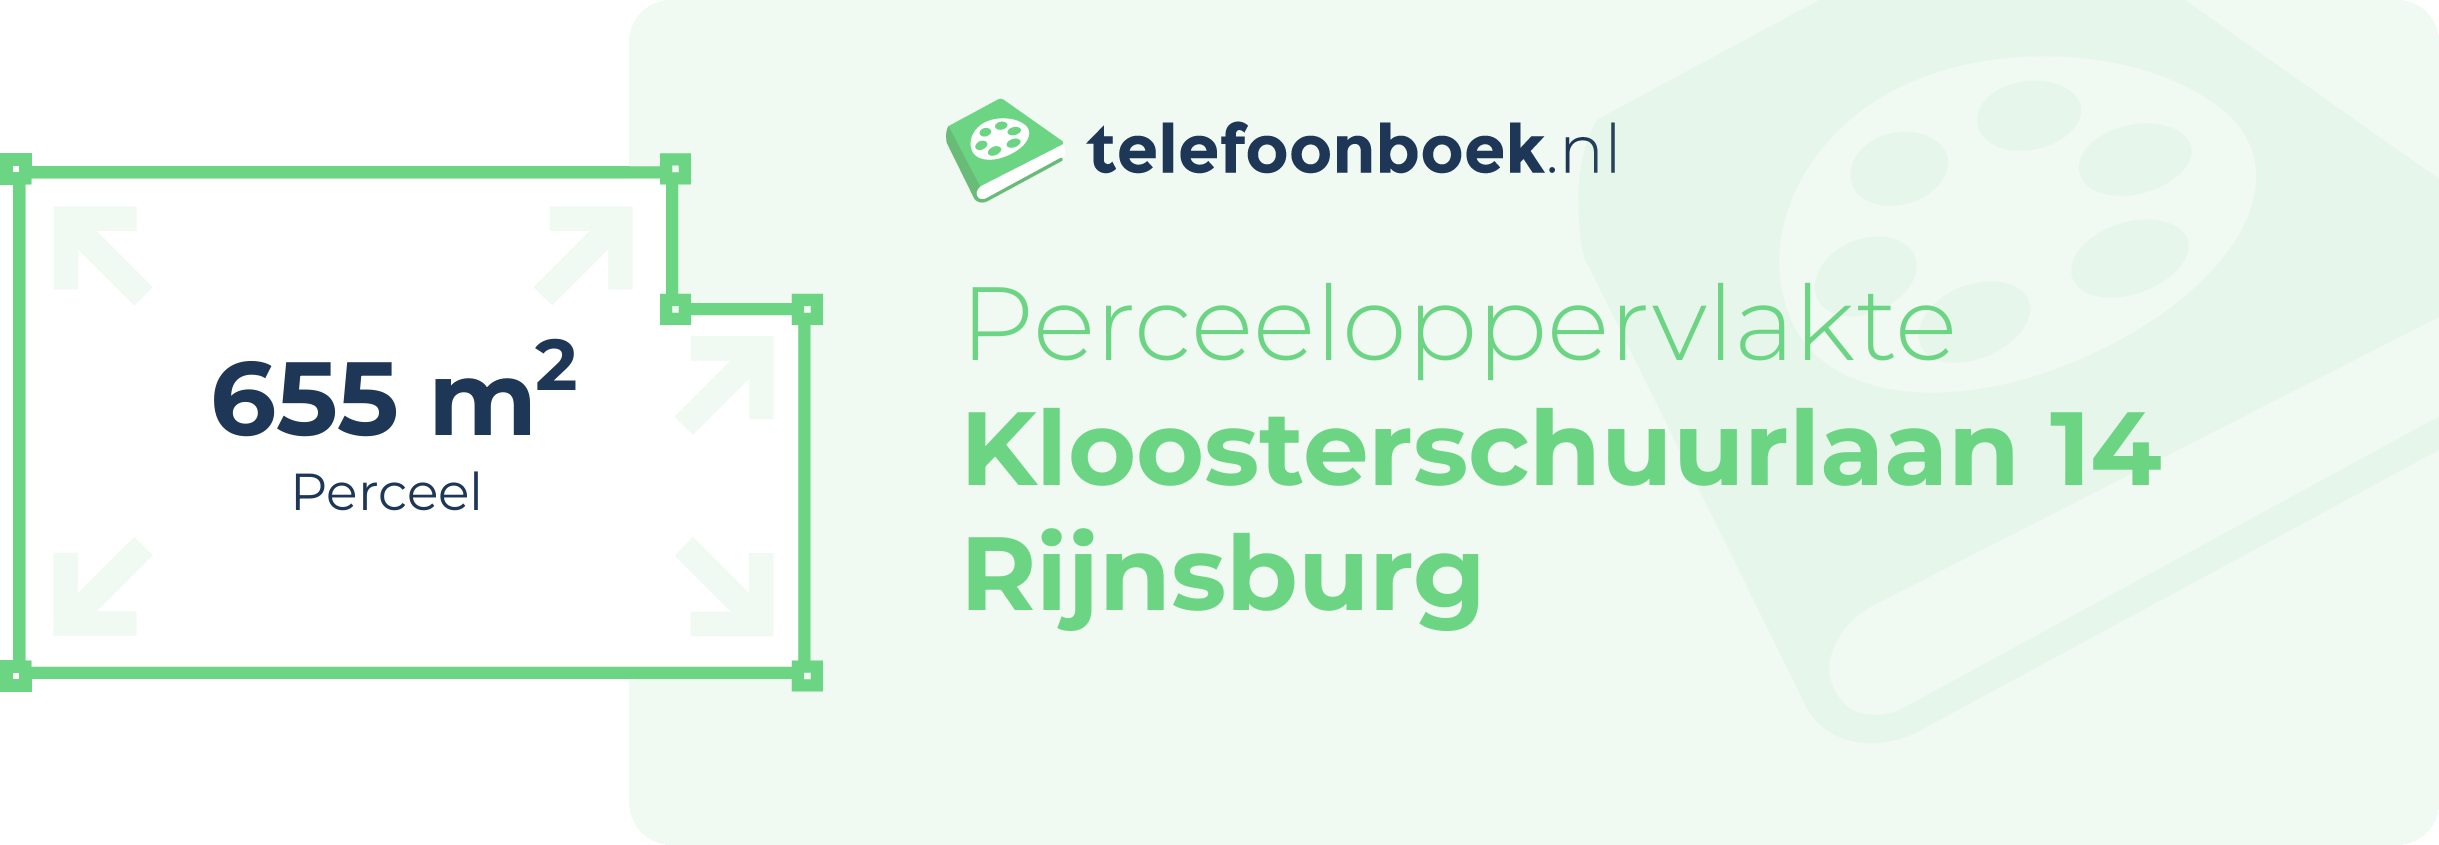 Perceeloppervlakte Kloosterschuurlaan 14 Rijnsburg